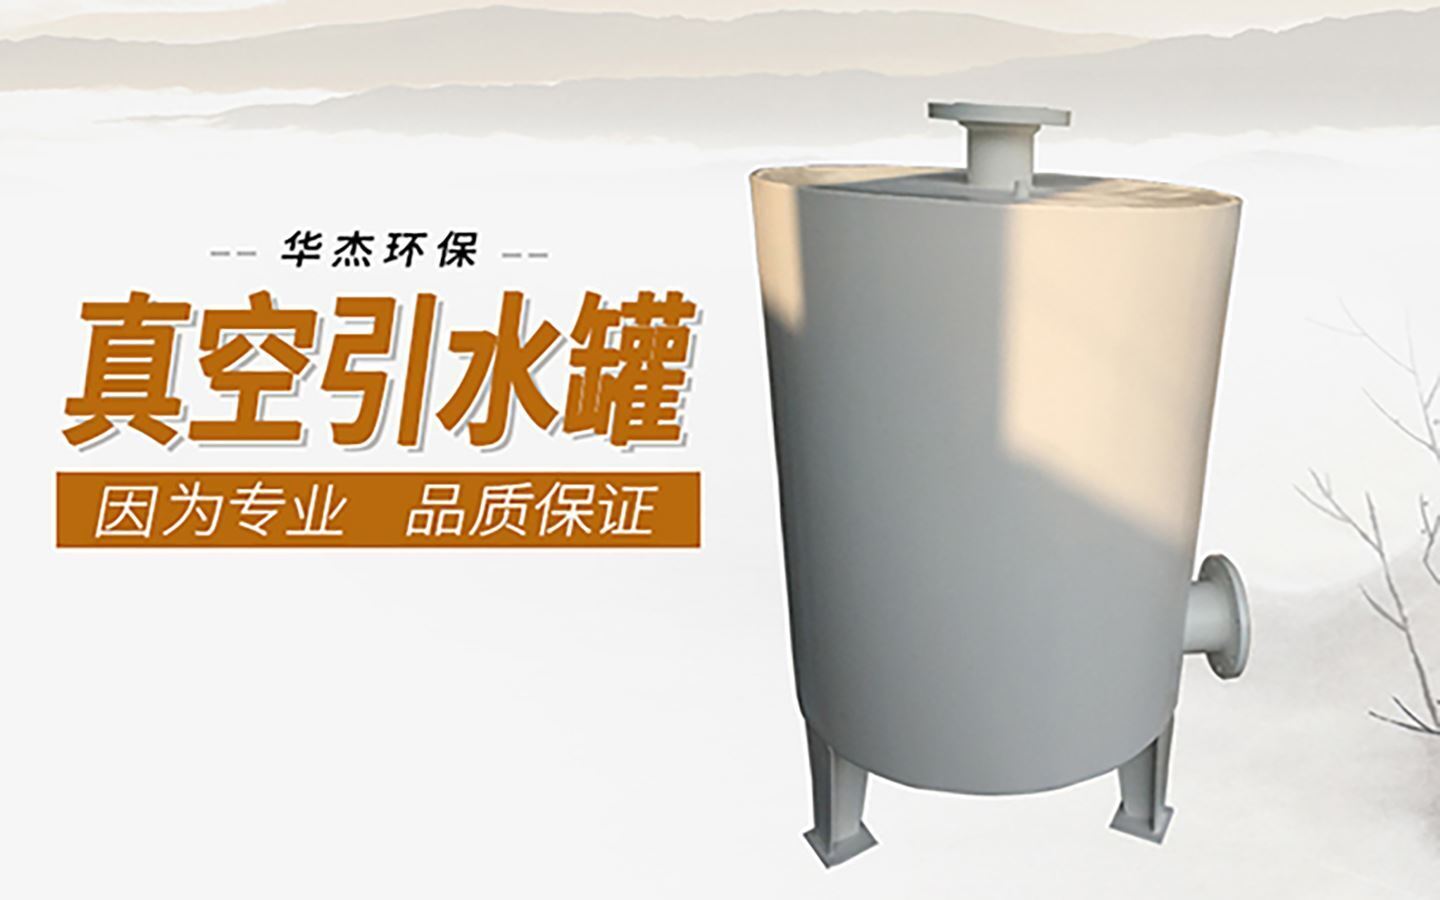 华体育会(中国)集团股份有限公司是真空引水罐生产厂家